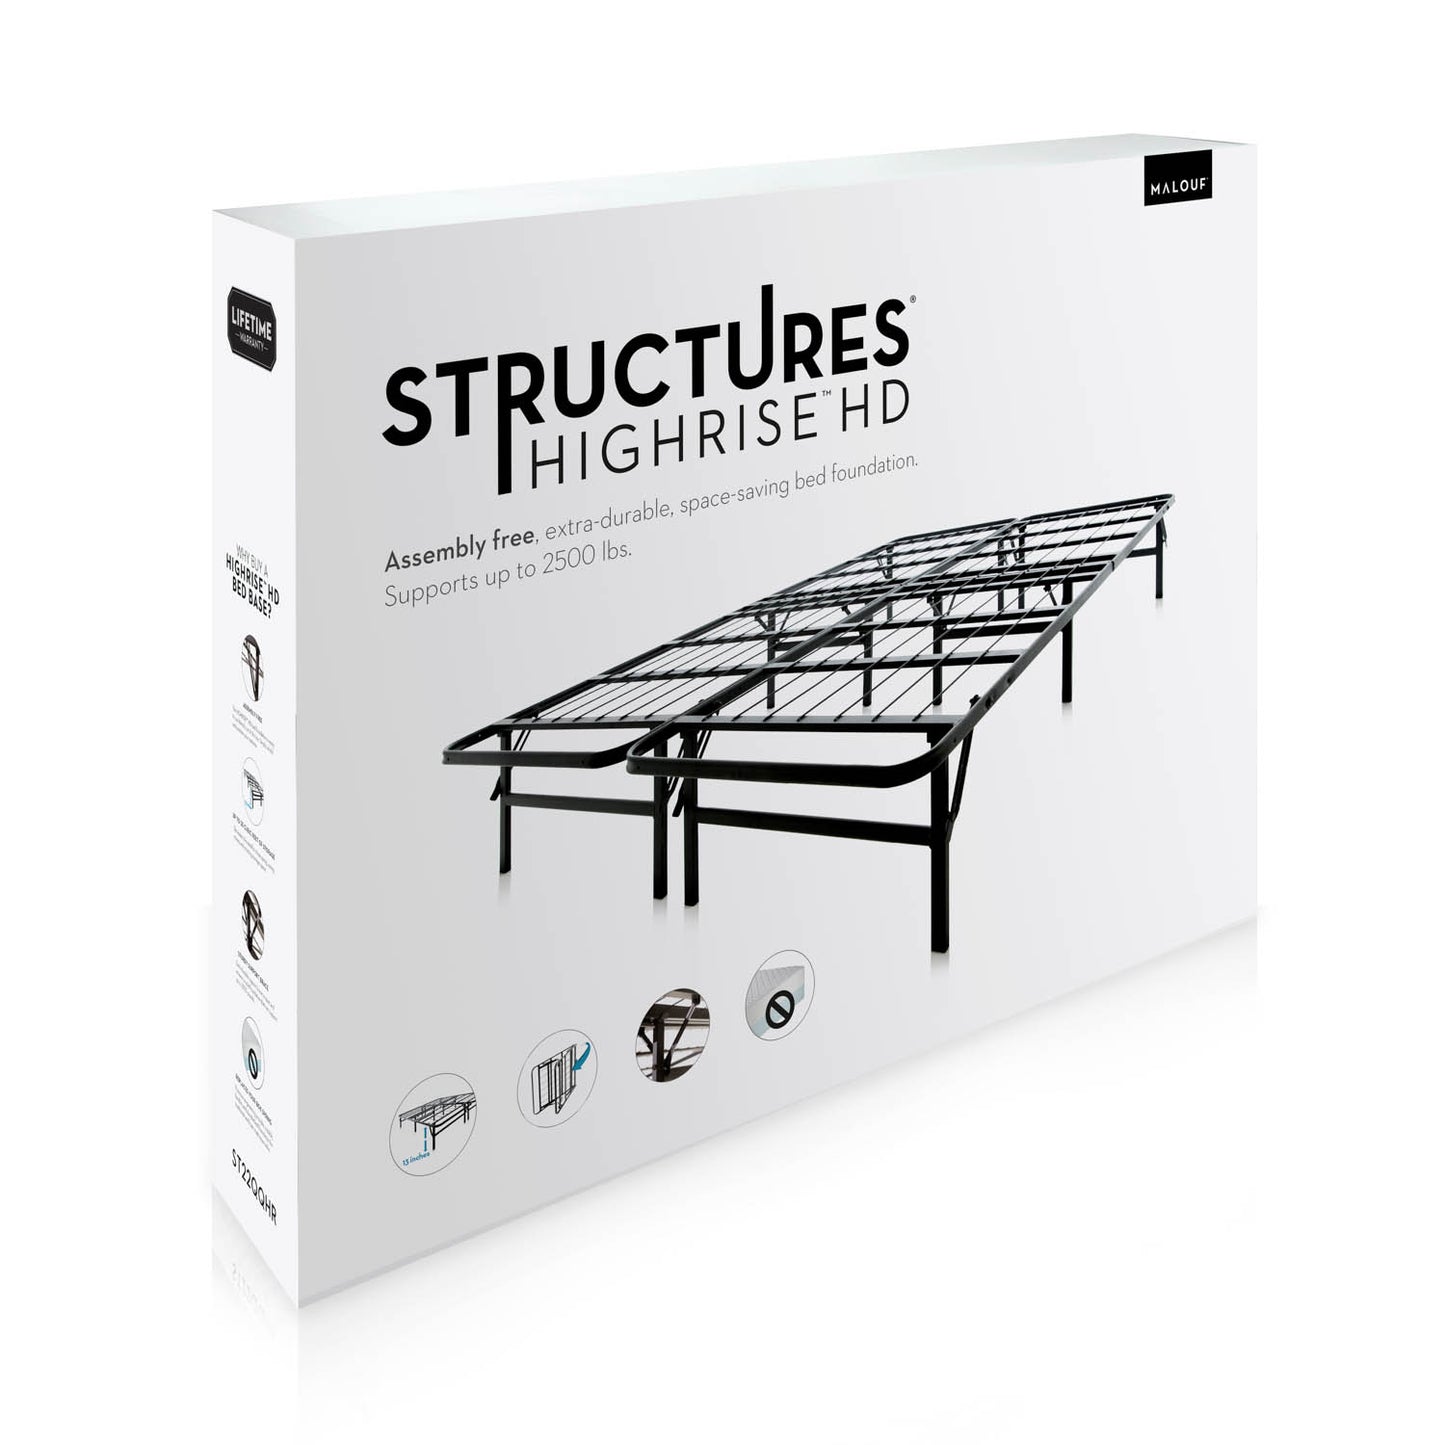 Structures High Rise HD Platform Bed Frame